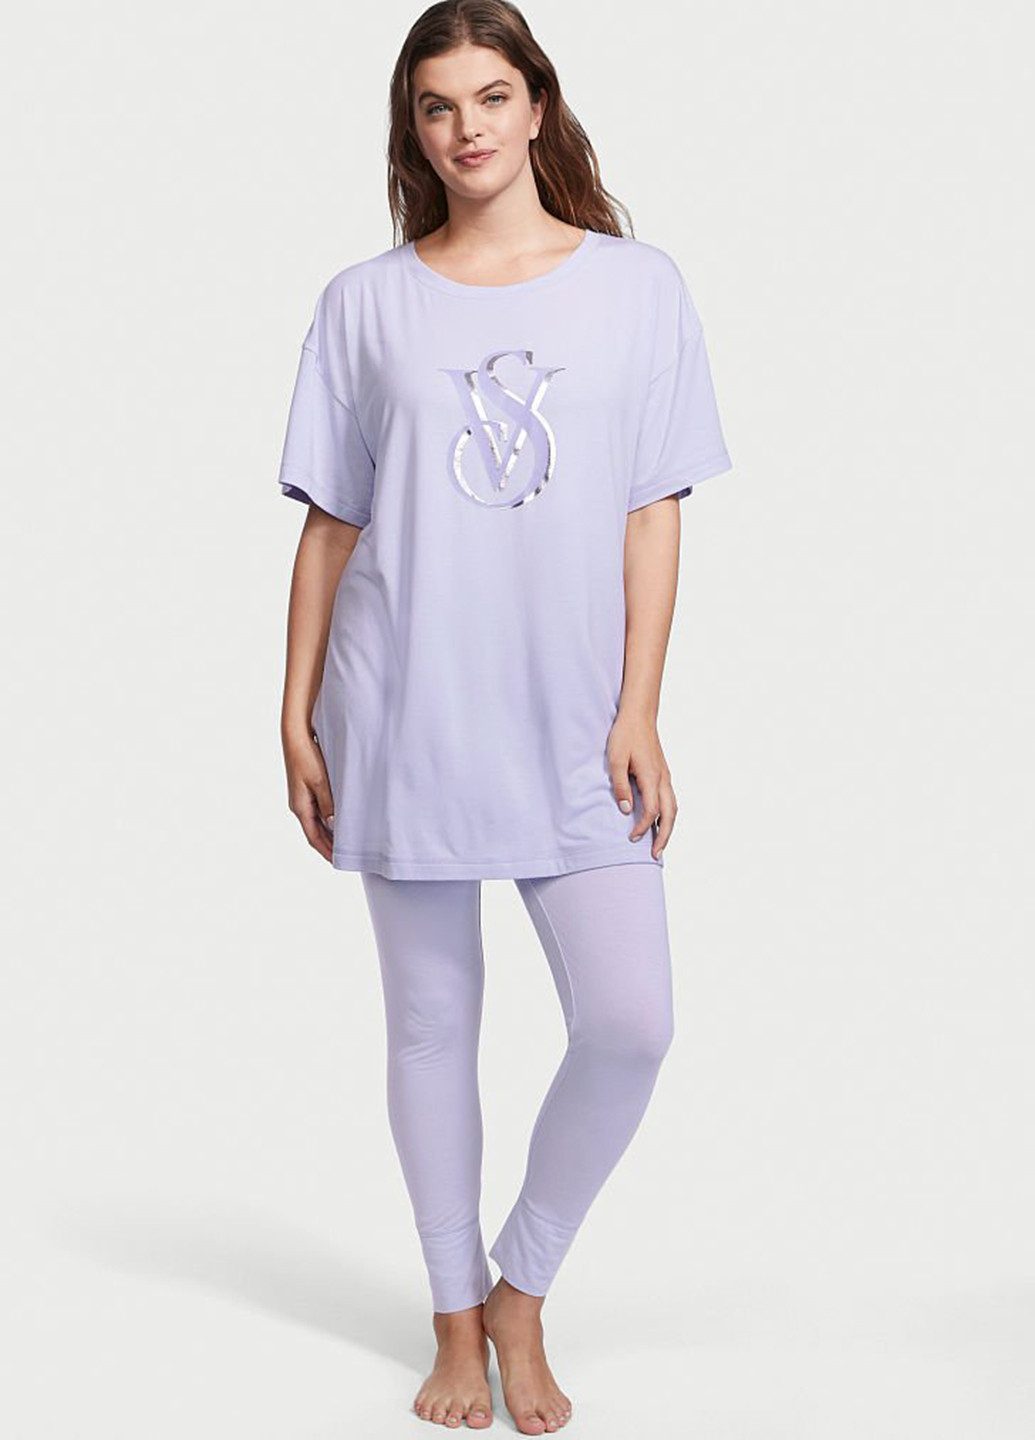 Сиреневая всесезон пижама (футболка, леггинсы) футболка + брюки Victoria's Secret